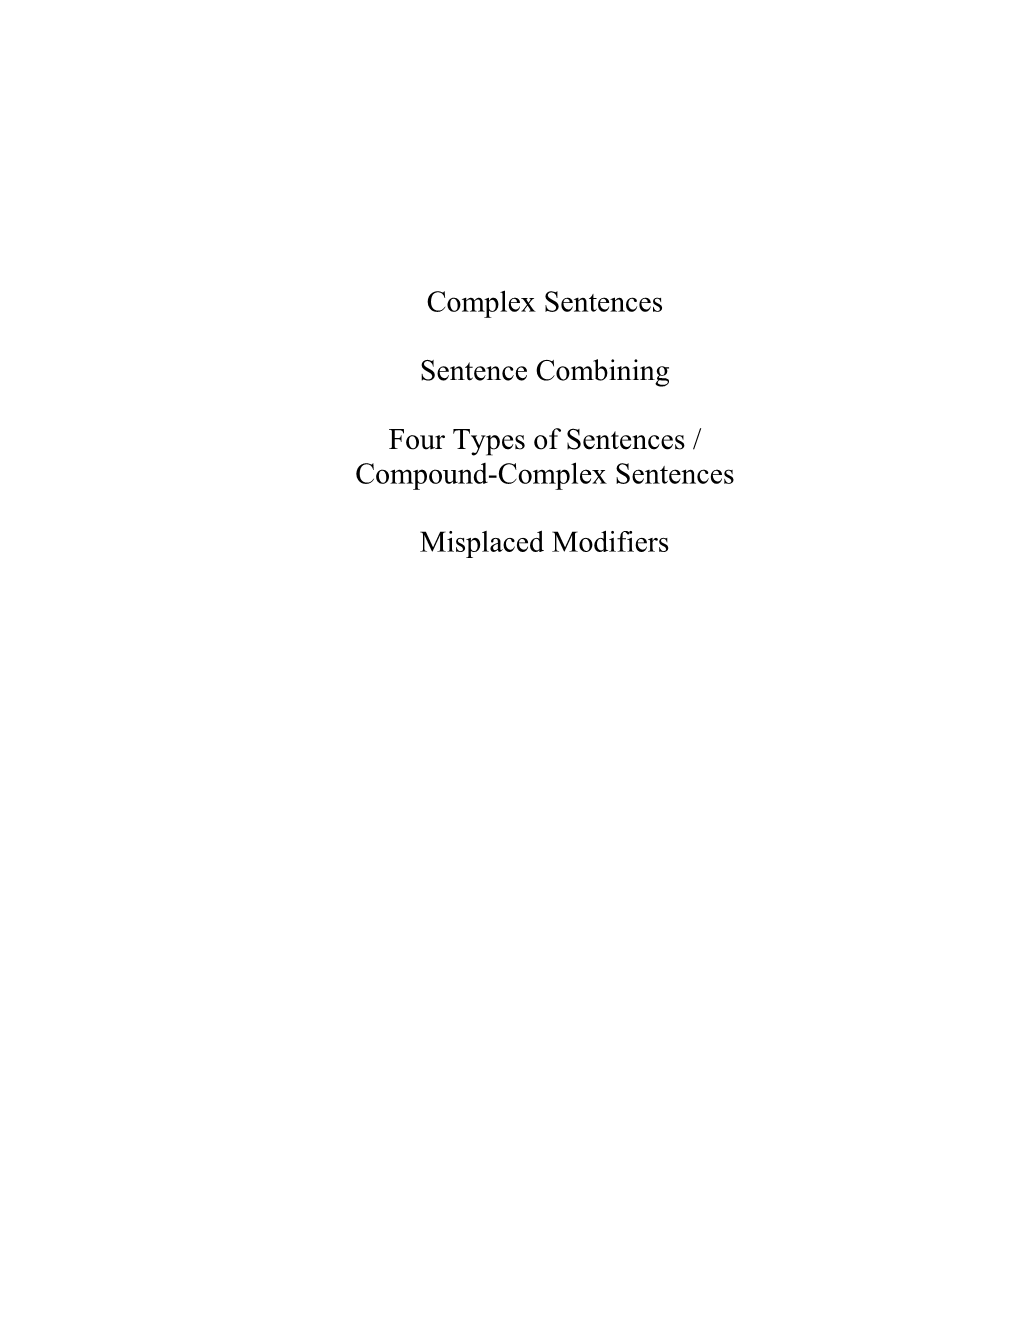 Four Types of Sentences /Compound-Complex Sentences